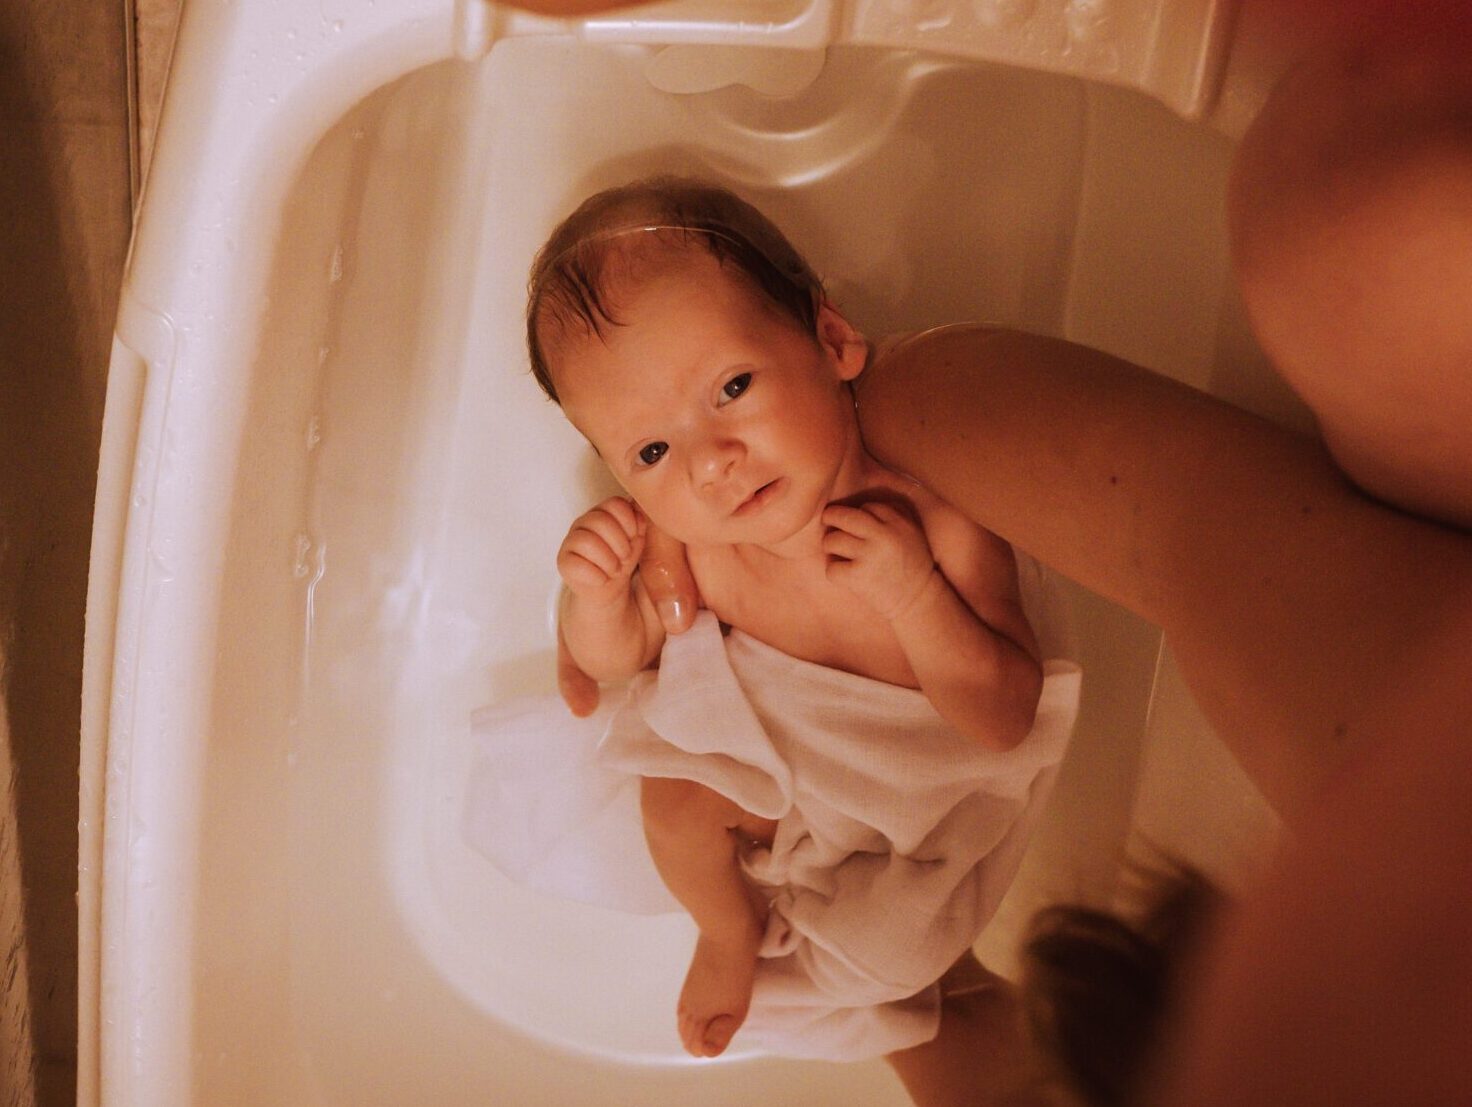 Baby Bathing in the bath tub